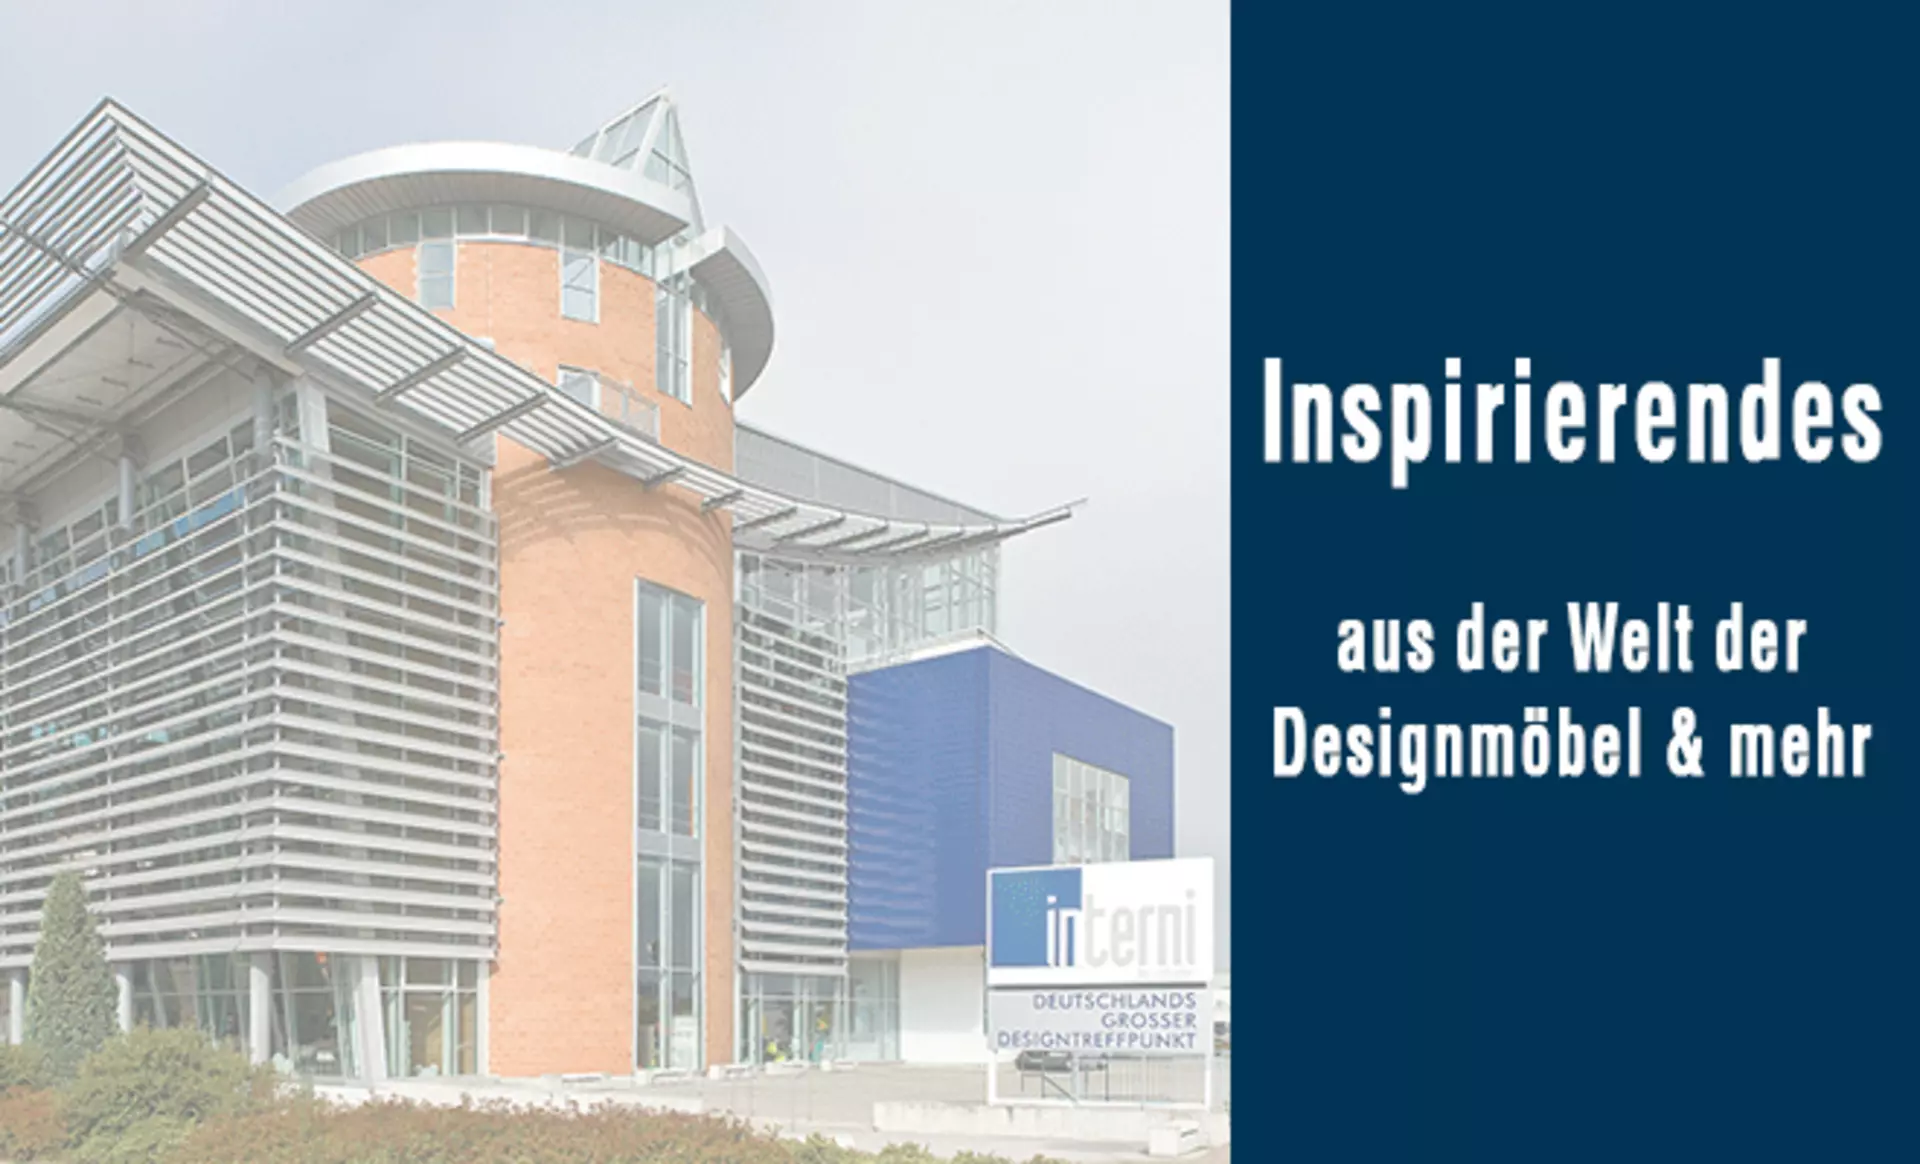 Interni by inhofer präsentiert im Folgenden Inspirierendes aus der Welt des Interieur-Design. Jetzt entdecken!